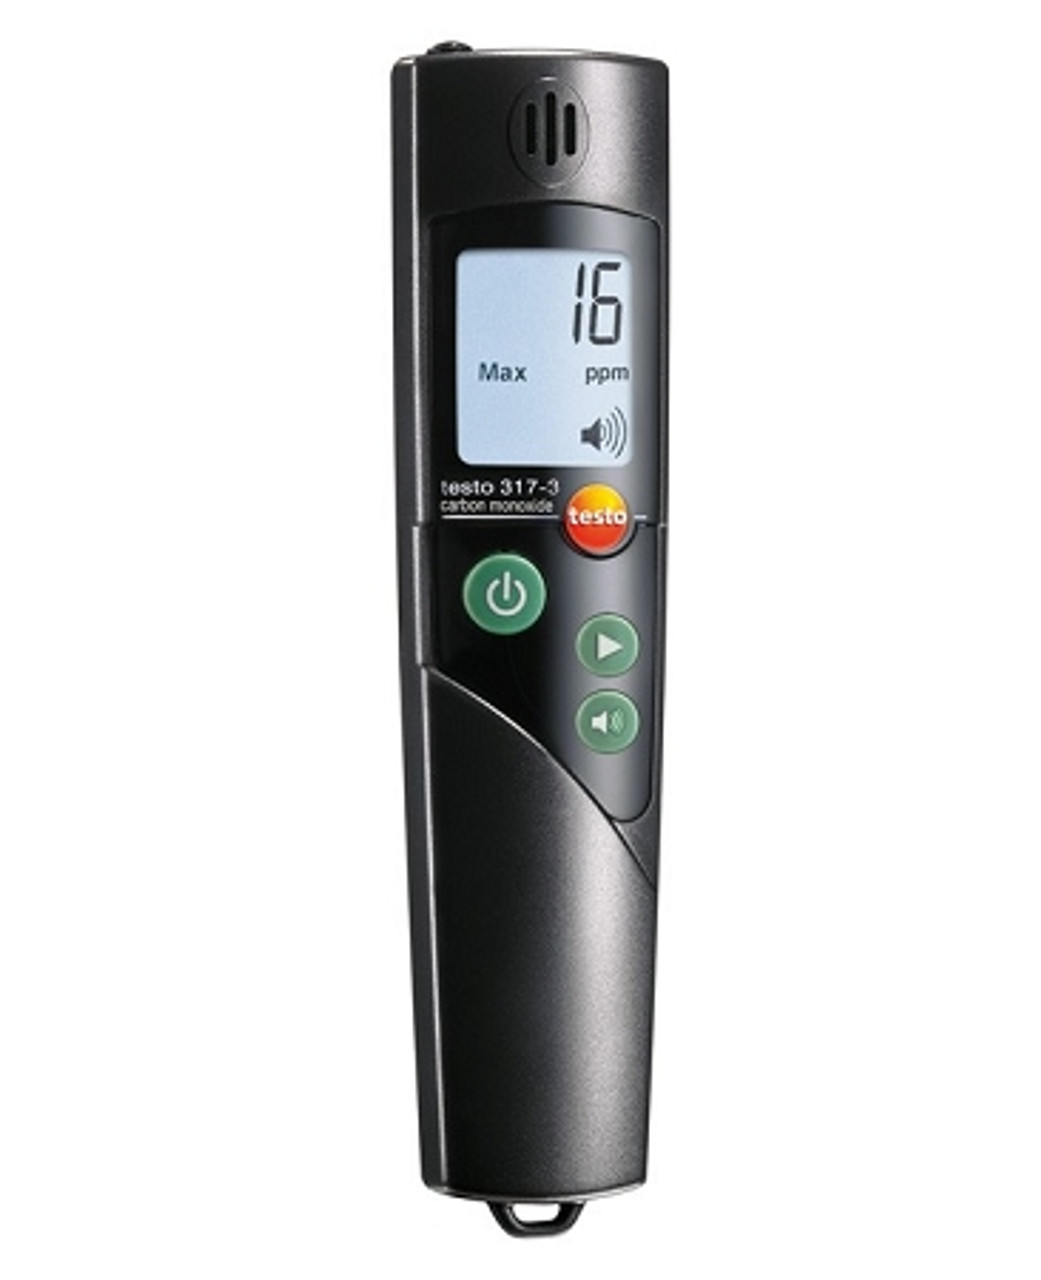 Portable Carbon Monoxide Detector, CO